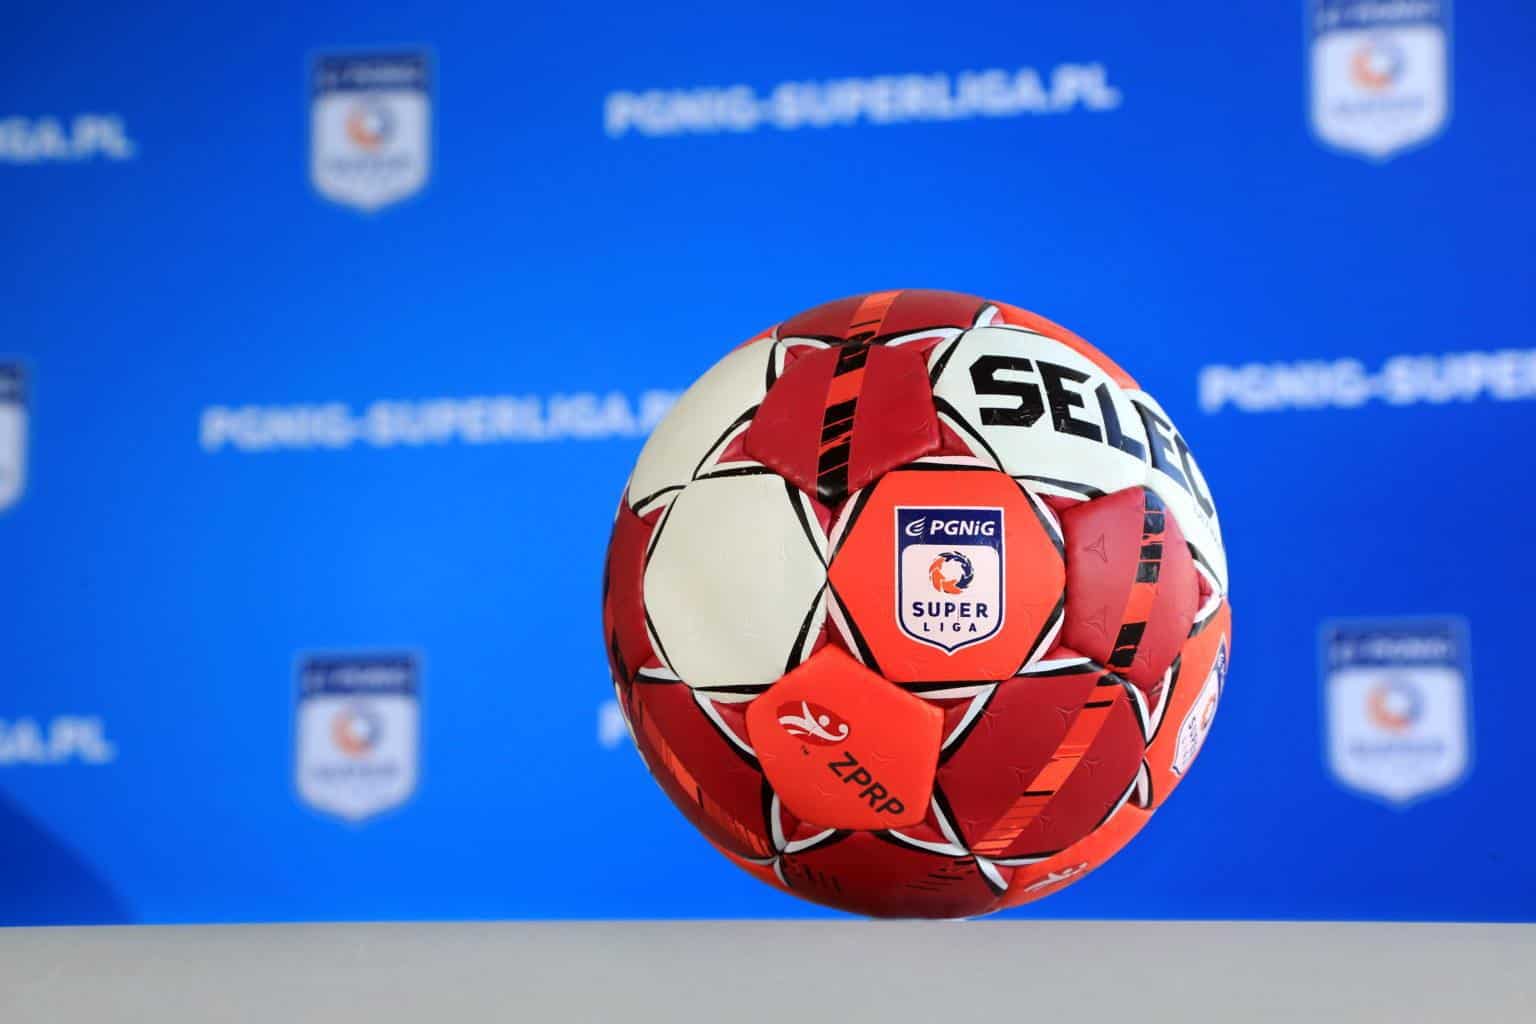 PGNiG Superliga zaprezentowała nową piłkę. Będą nią grać również zawodnicy SPR Stali Mielec - Zdjęcie główne